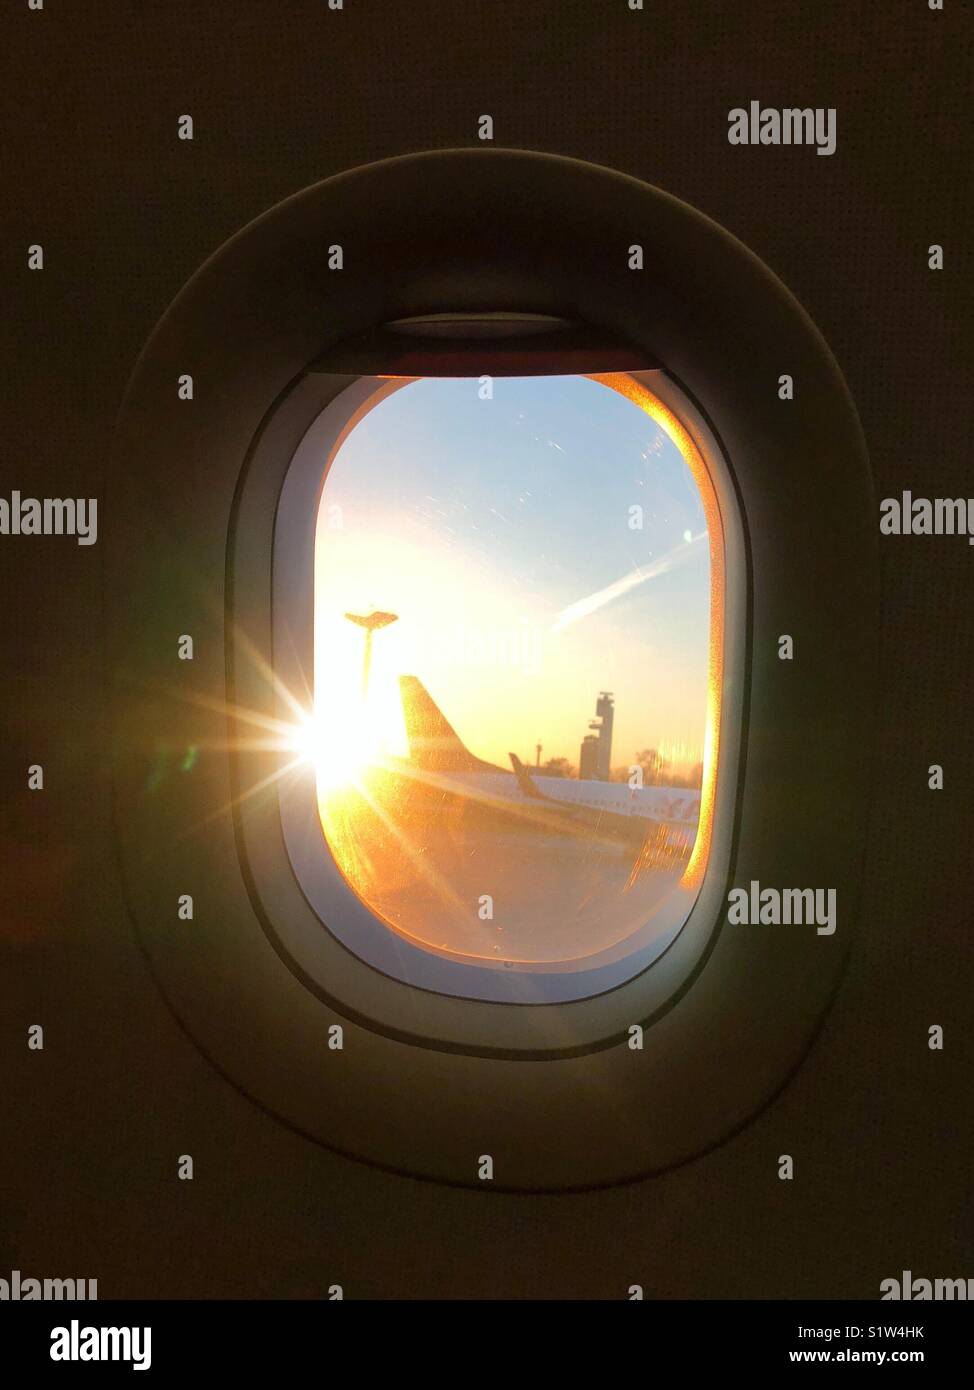 View through a plane window Stock Photo